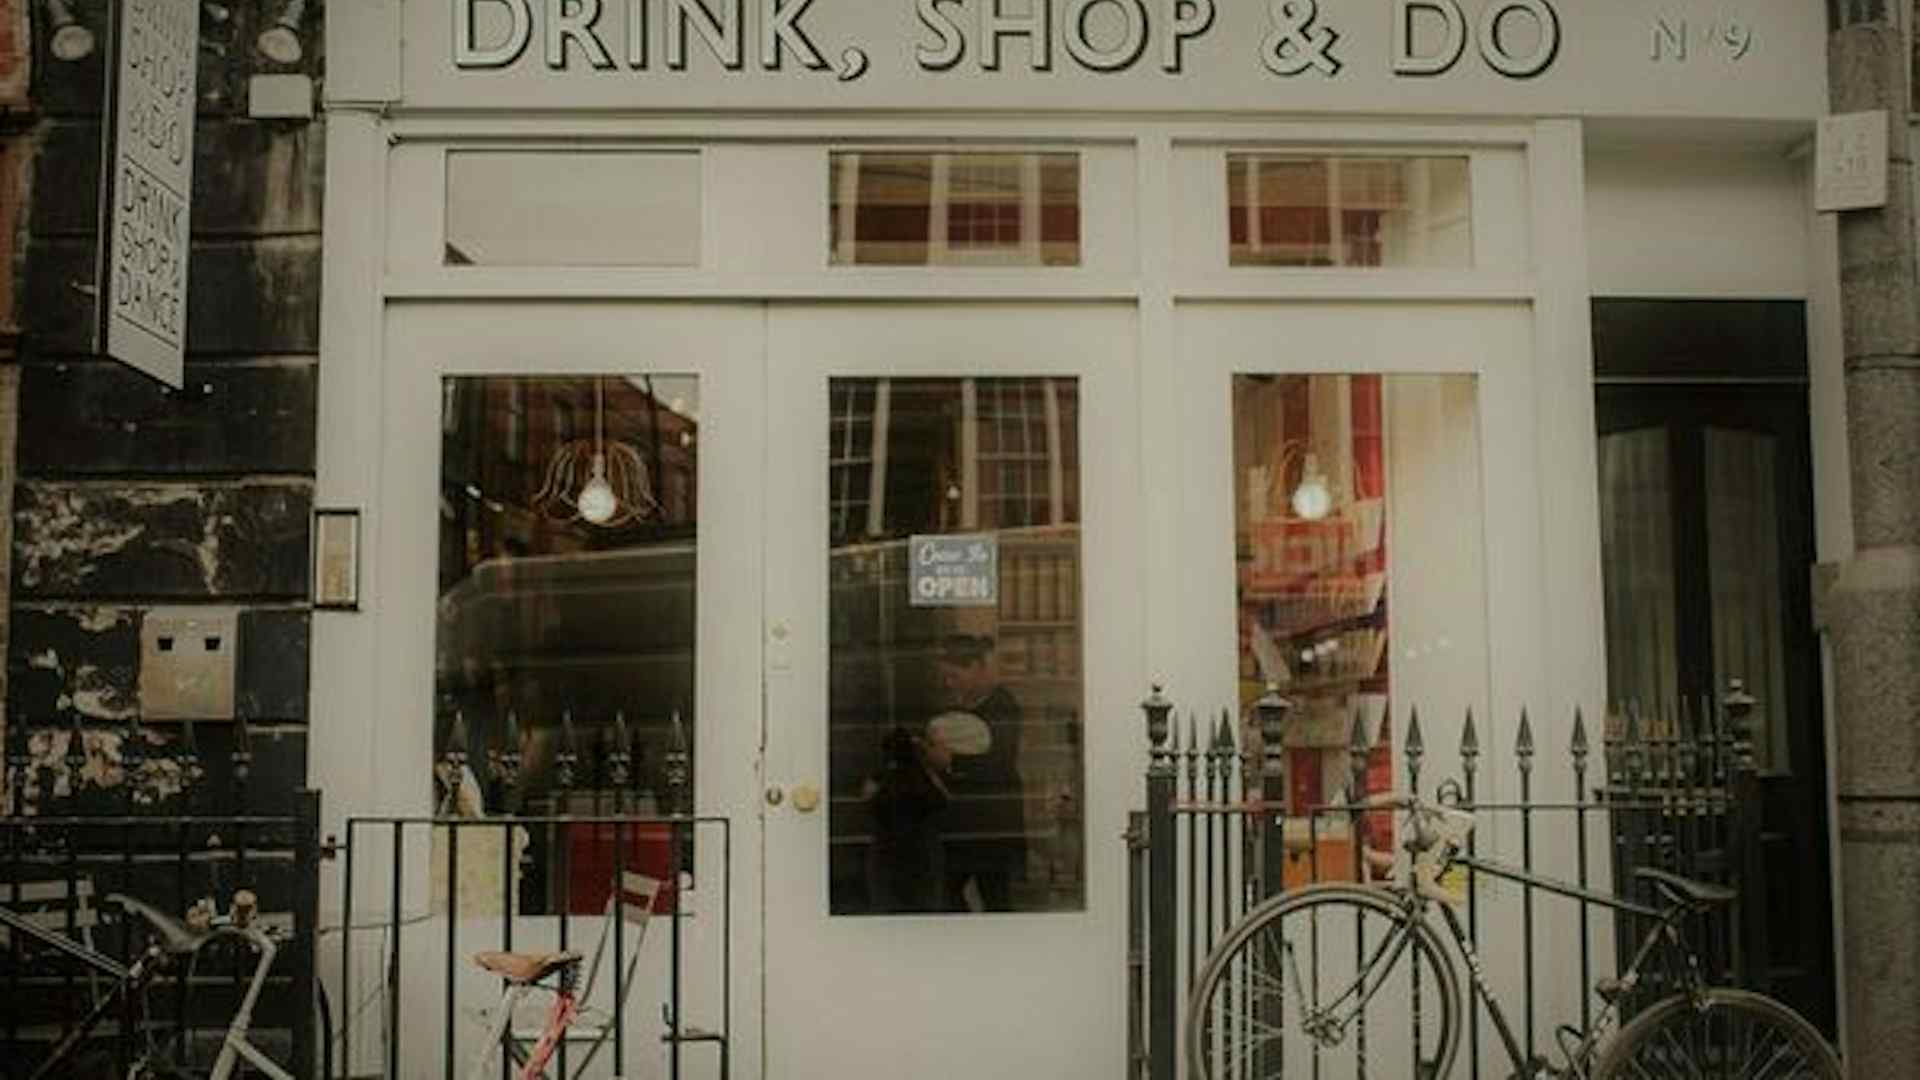 Unique Venue Of The Month: Drink, Shop & Do